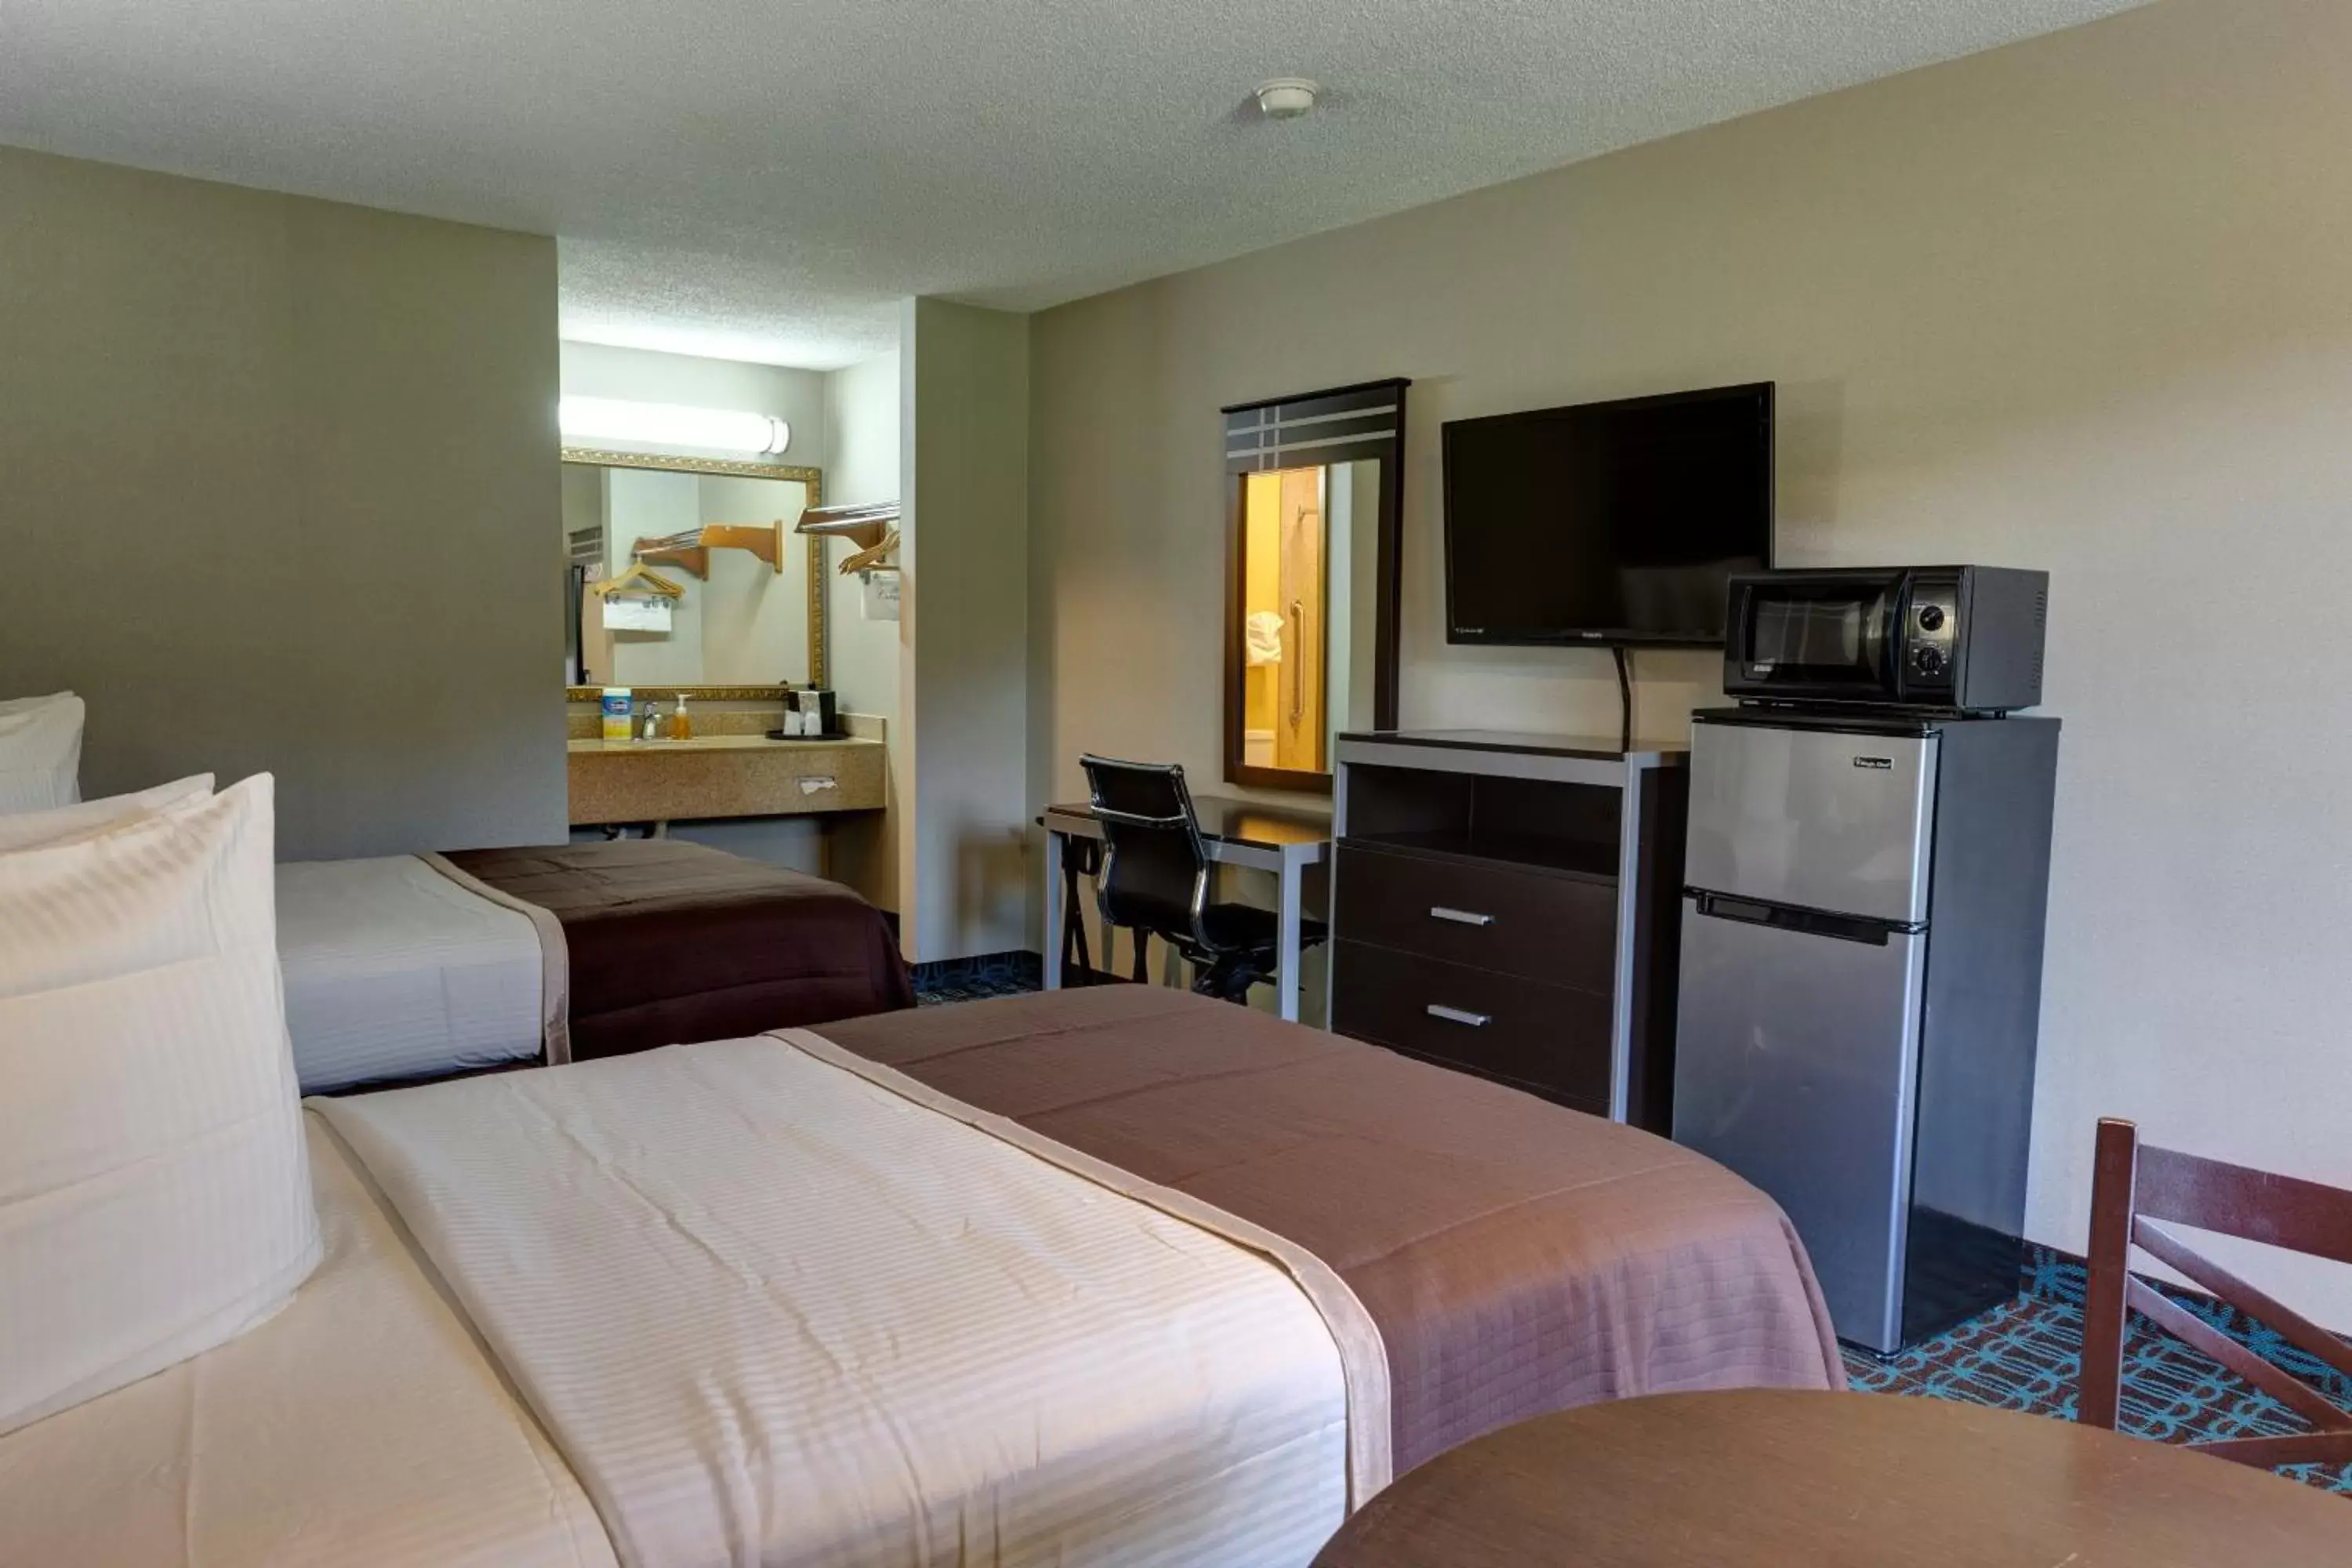 Room Photo in Deluxe Inn - Fayetteville I-95